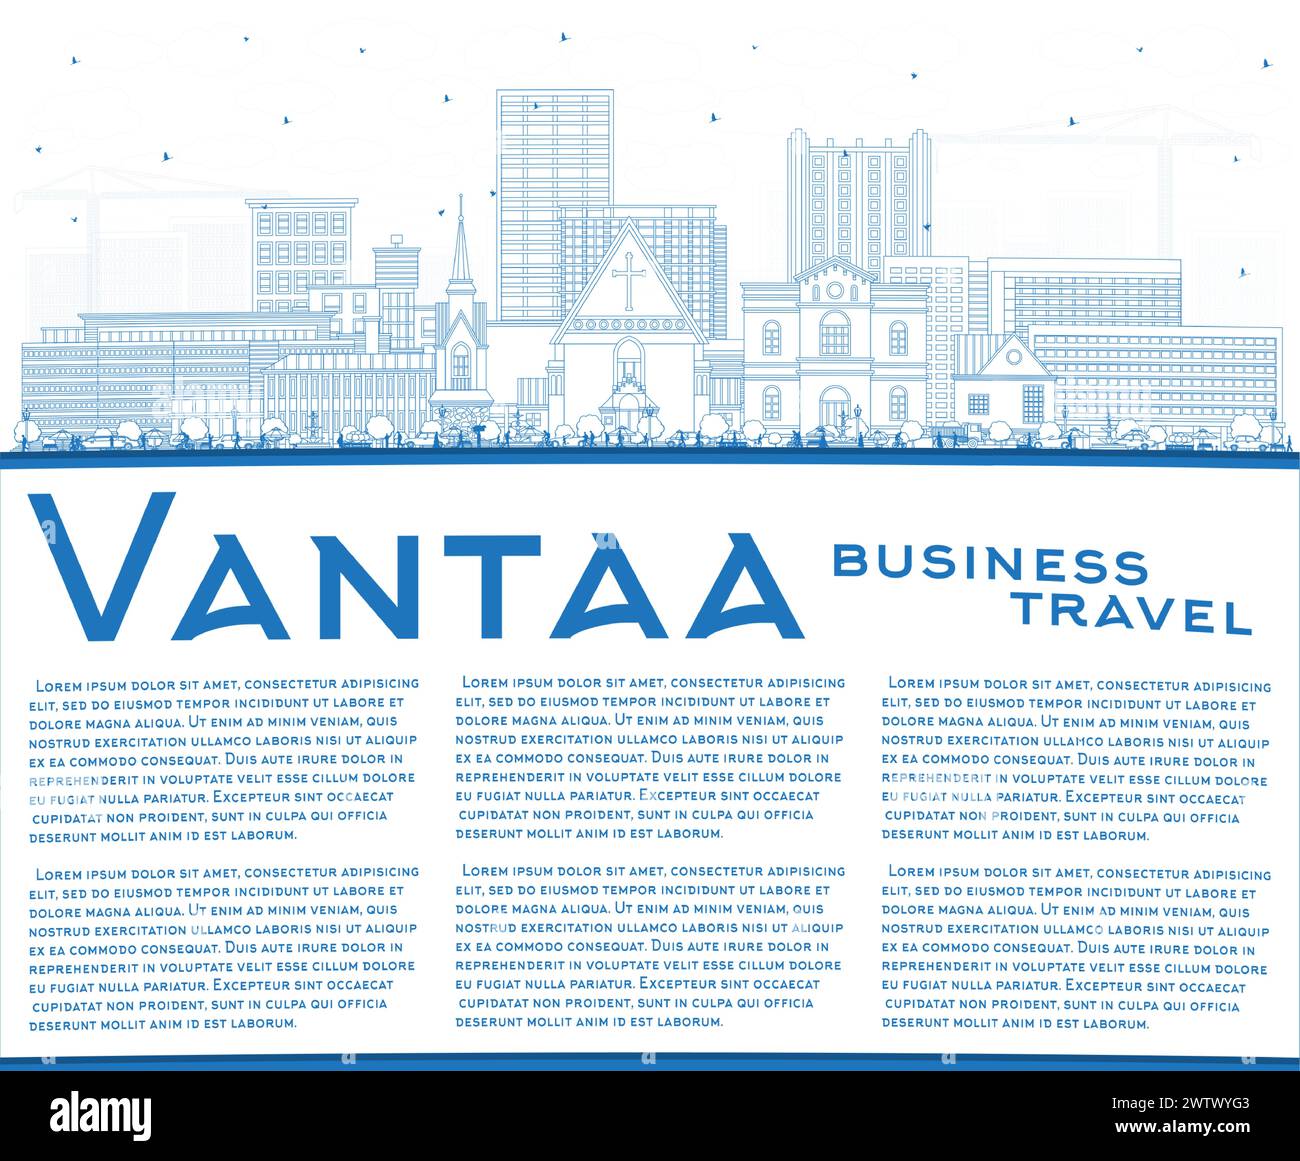 Esquissez la ligne d'horizon de la ville de Vantaa Finlande avec des bâtiments bleus et un espace de copie. Illustration vectorielle. Paysage urbain de Vantaa avec des points de repère. Illustration de Vecteur